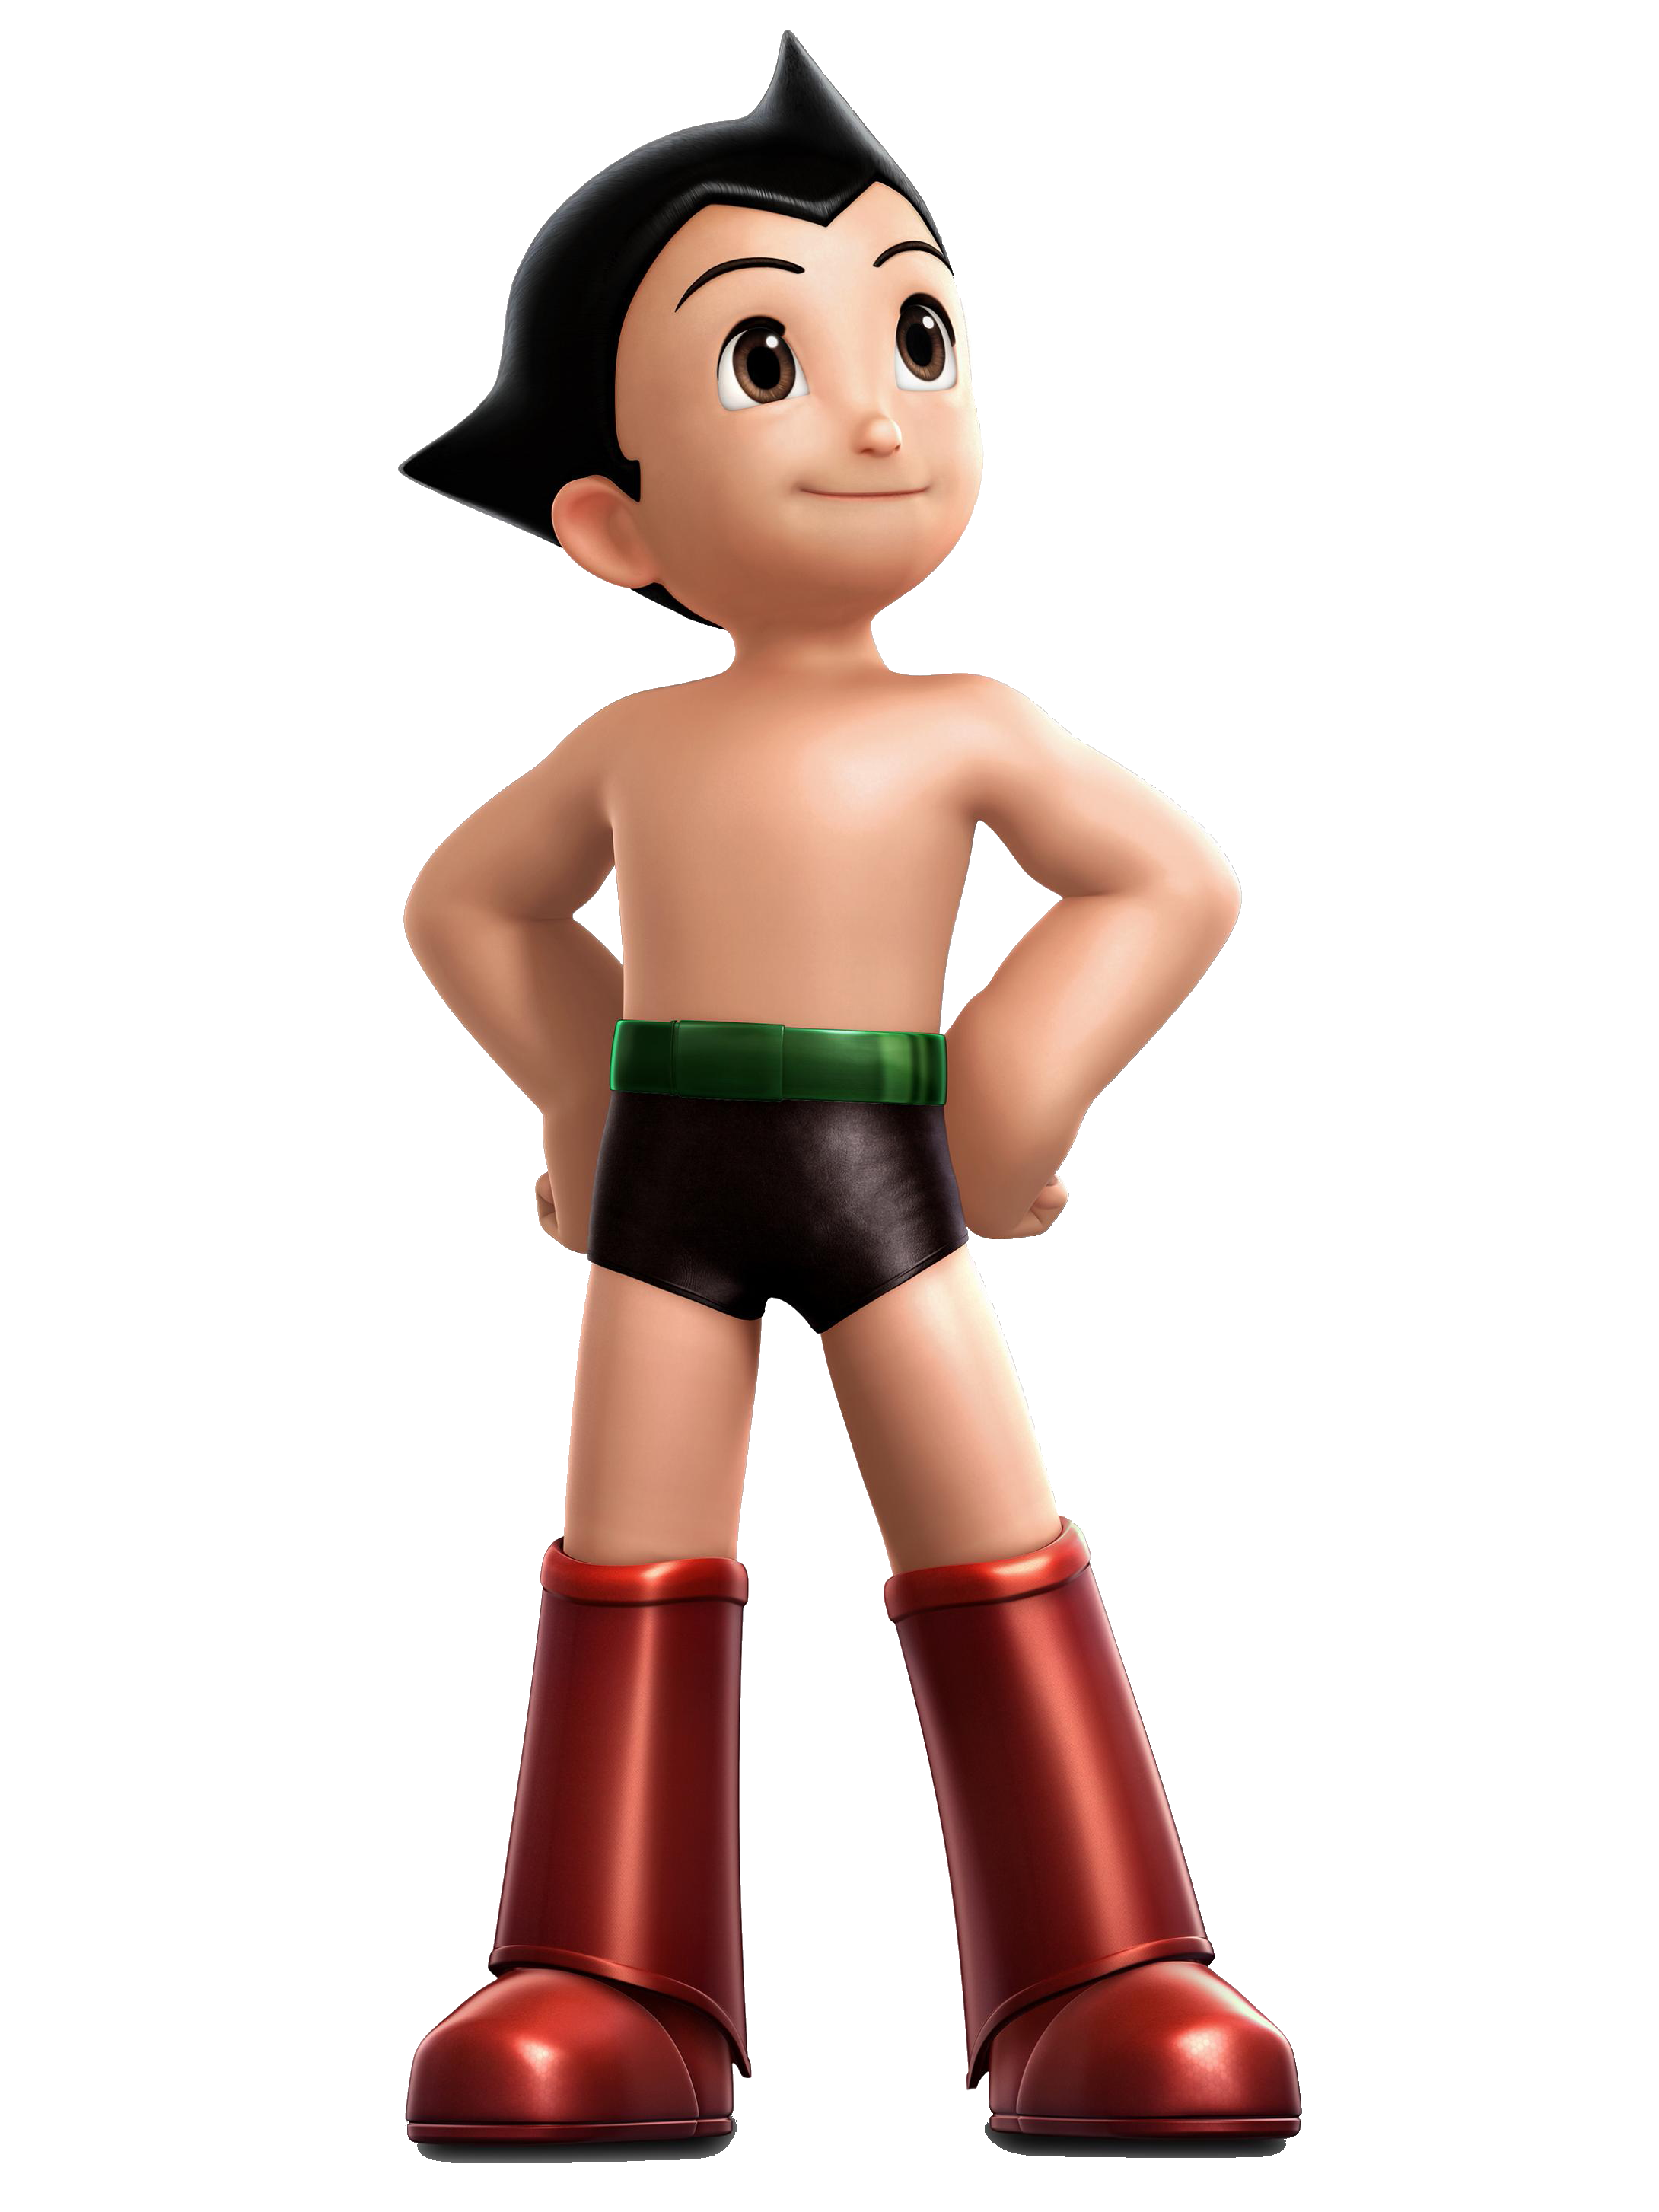 Astro Boy (film) - Wikipedia